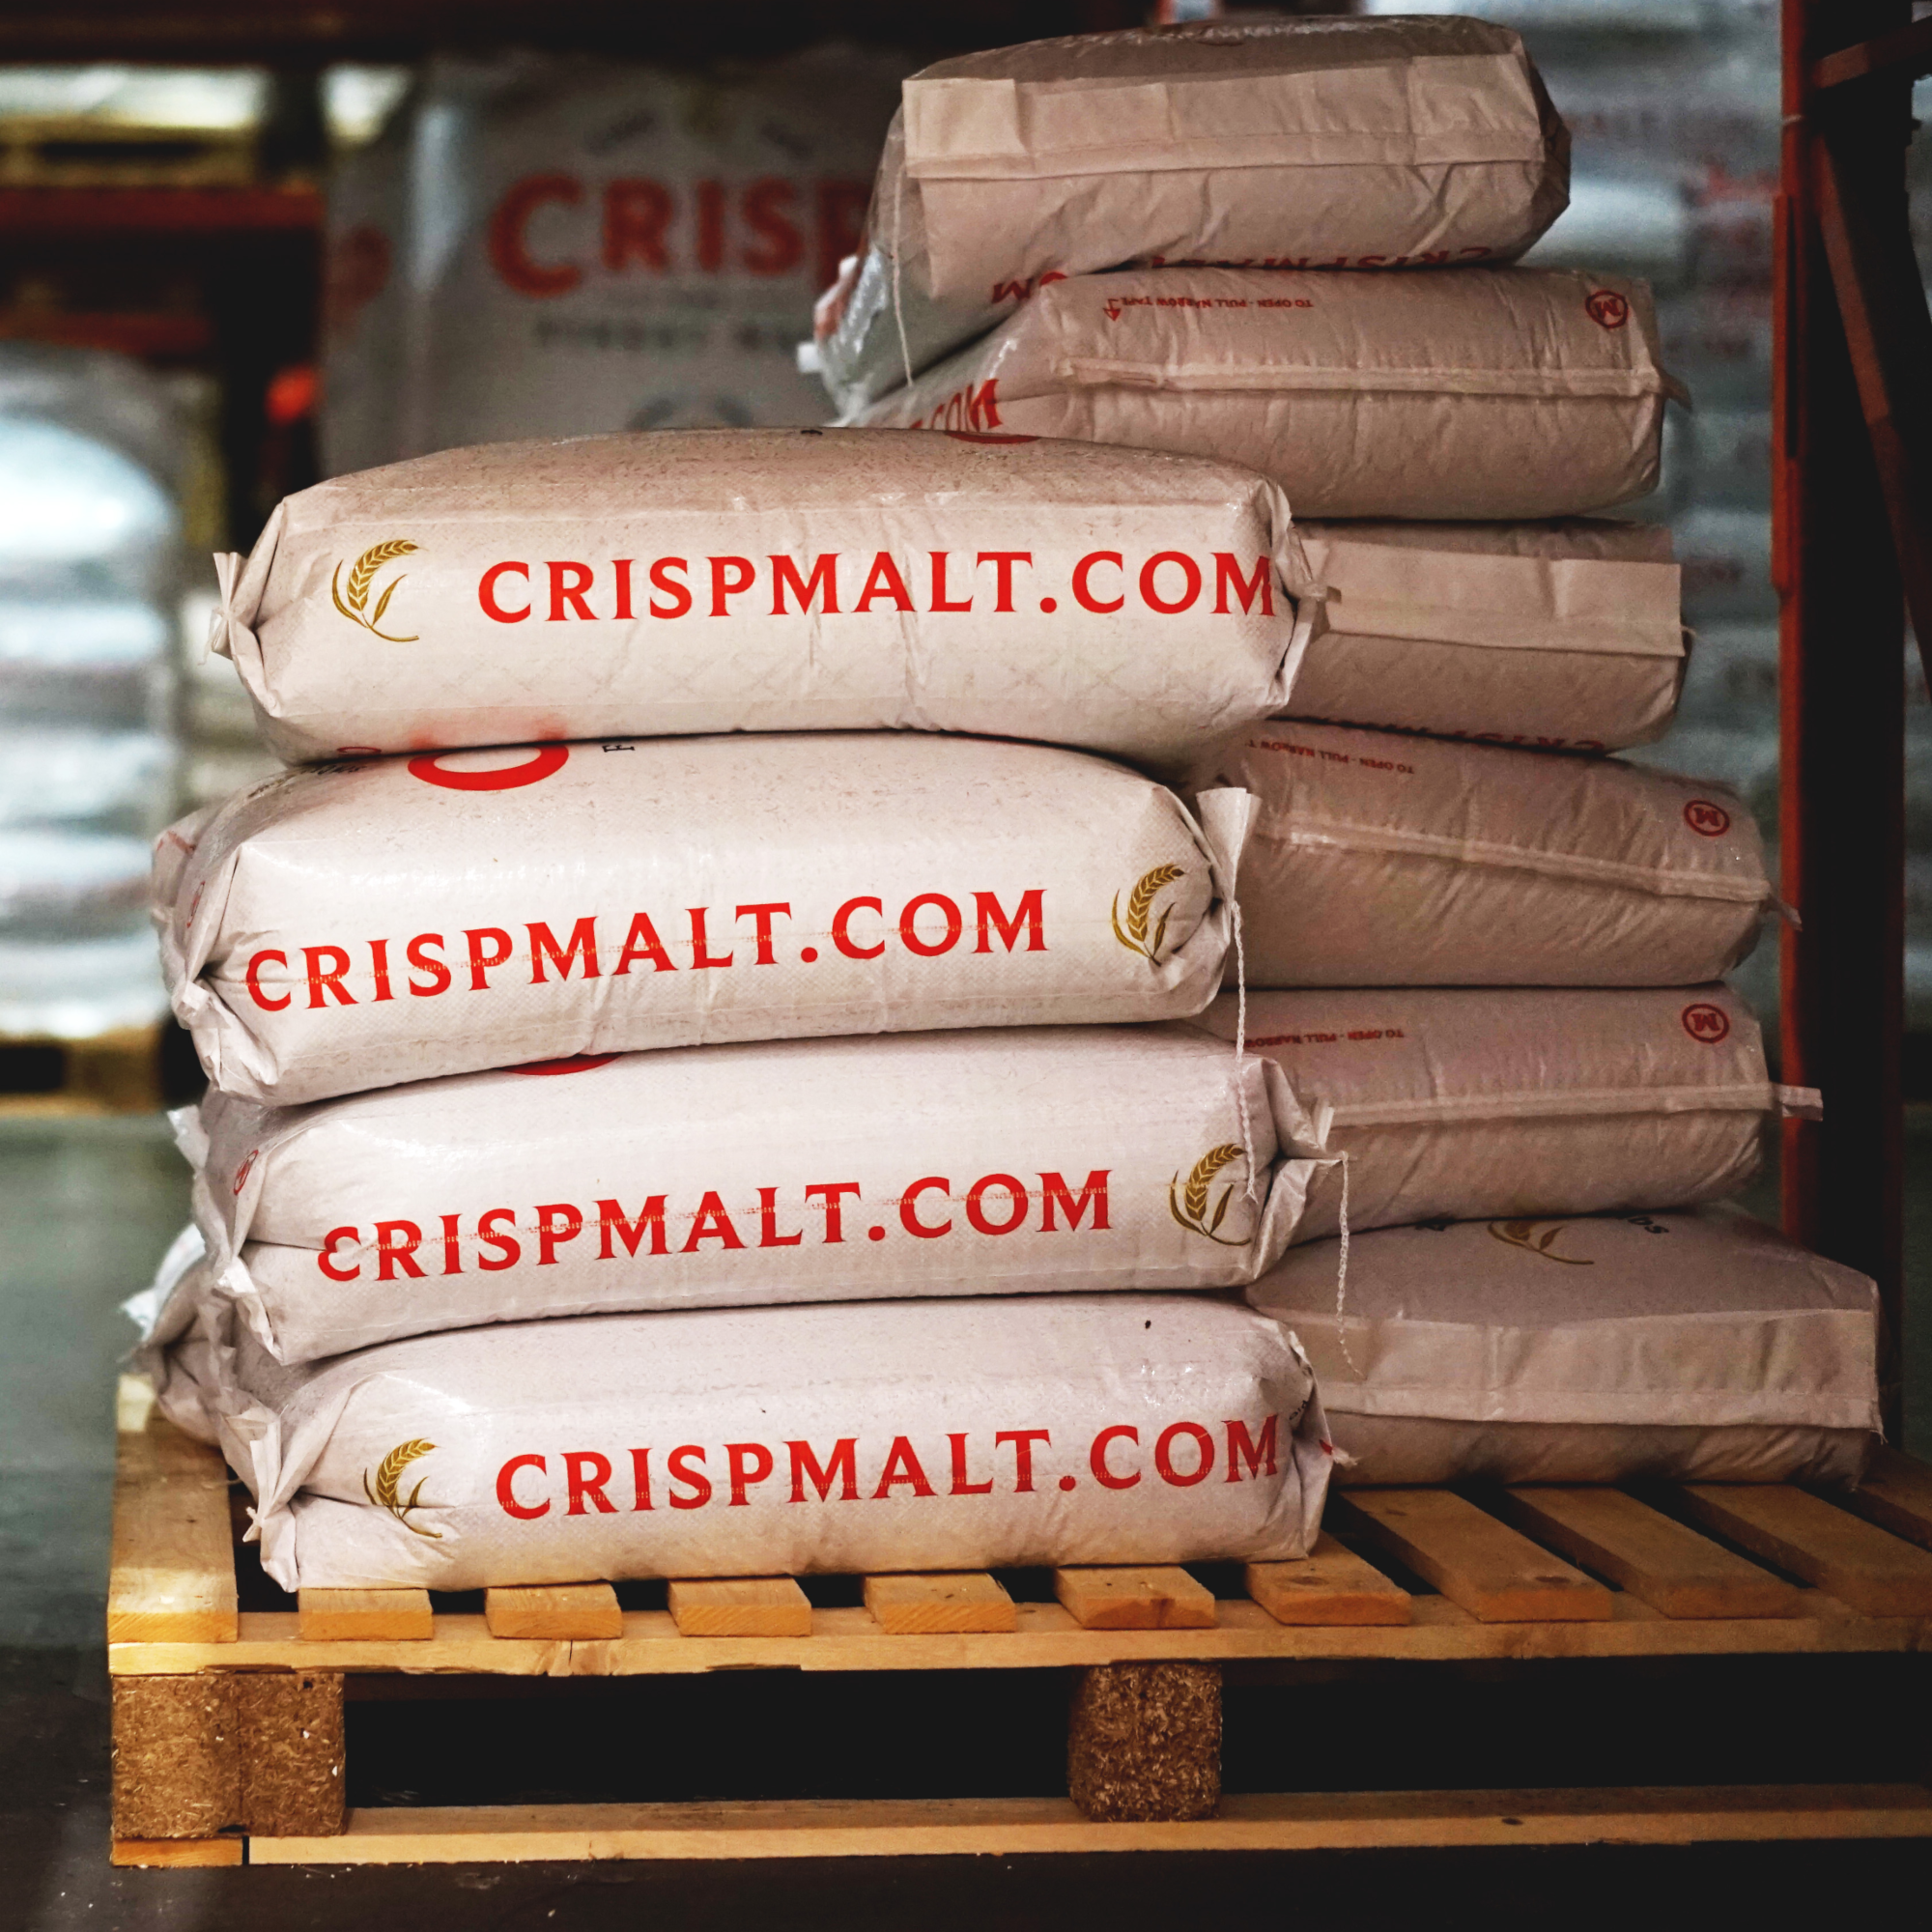 Crisp Malt 25kg Sacks in the Warehouse